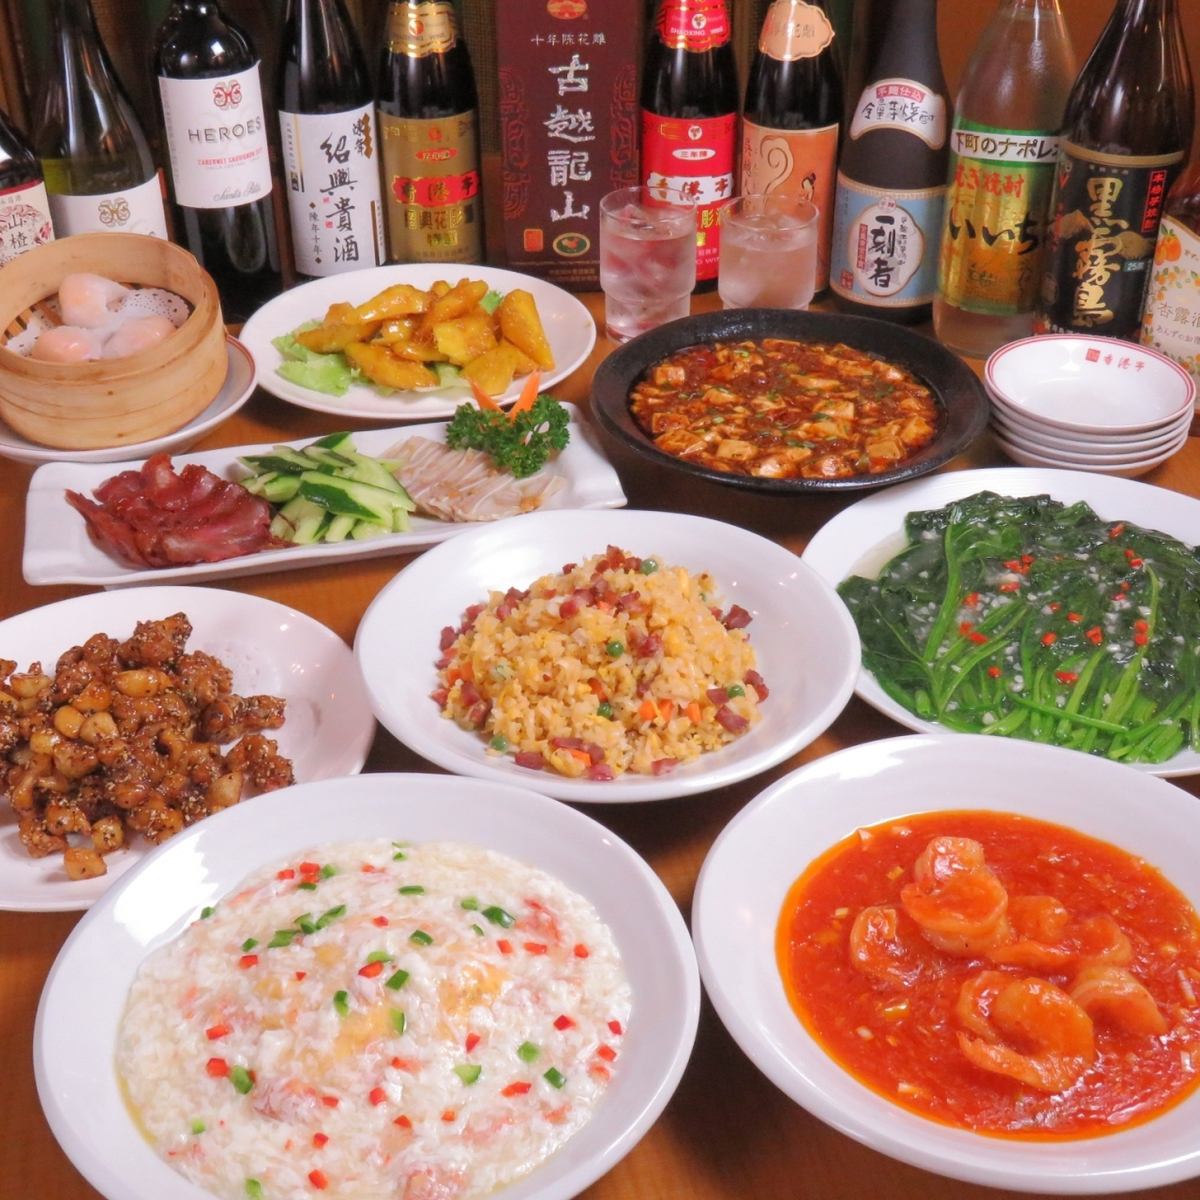 您可以以合理的价格享用饺子、麻婆豆腐、饺子等中餐。